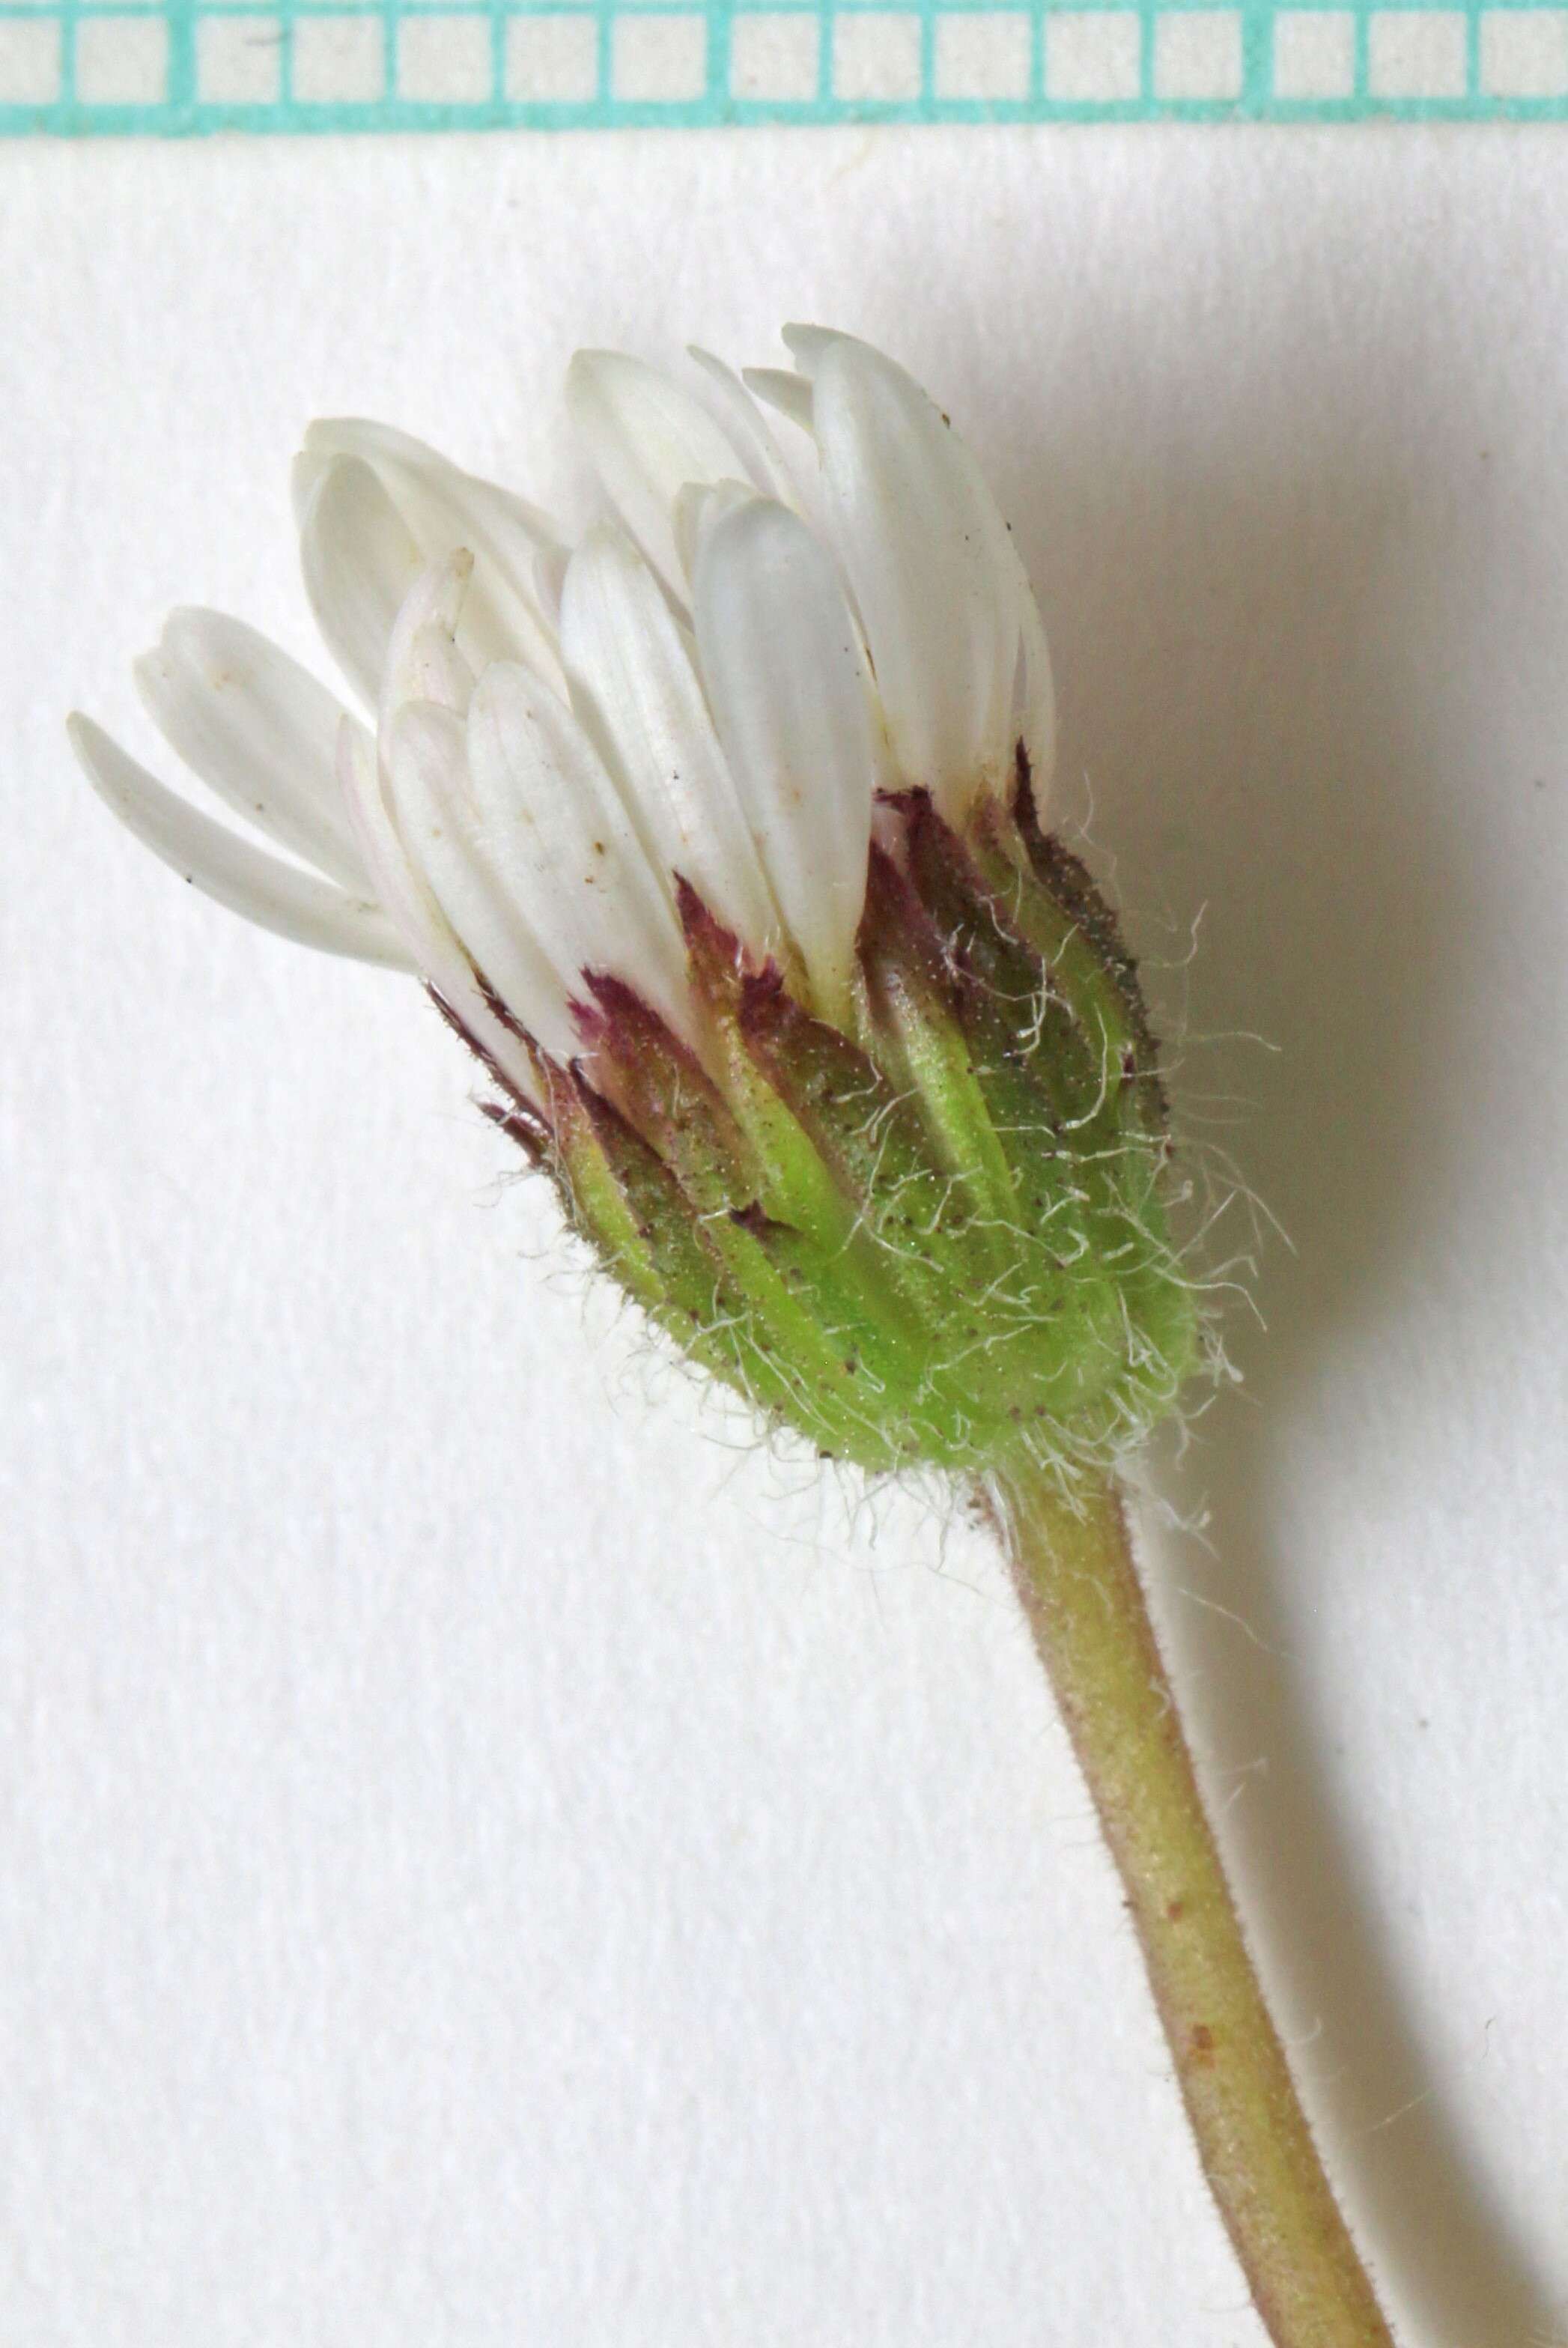 Image of cutleaf daisy